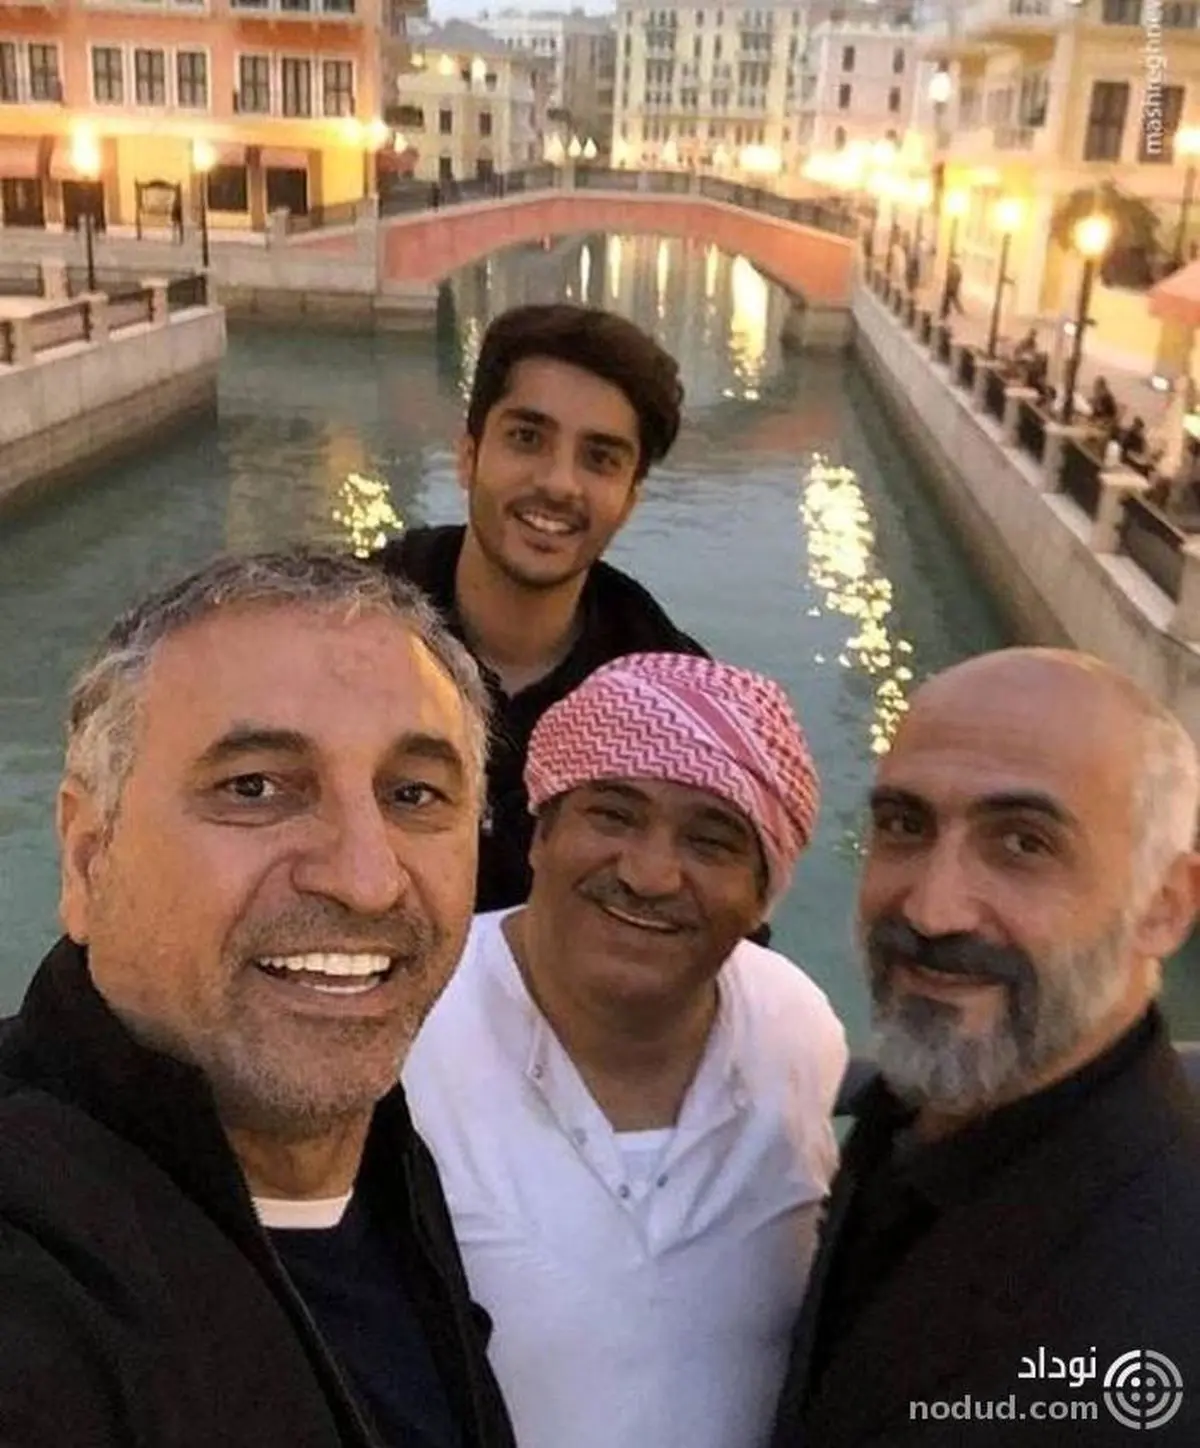 سلفی 4 بازیگر مشهور ایرانی در قطر + عکس